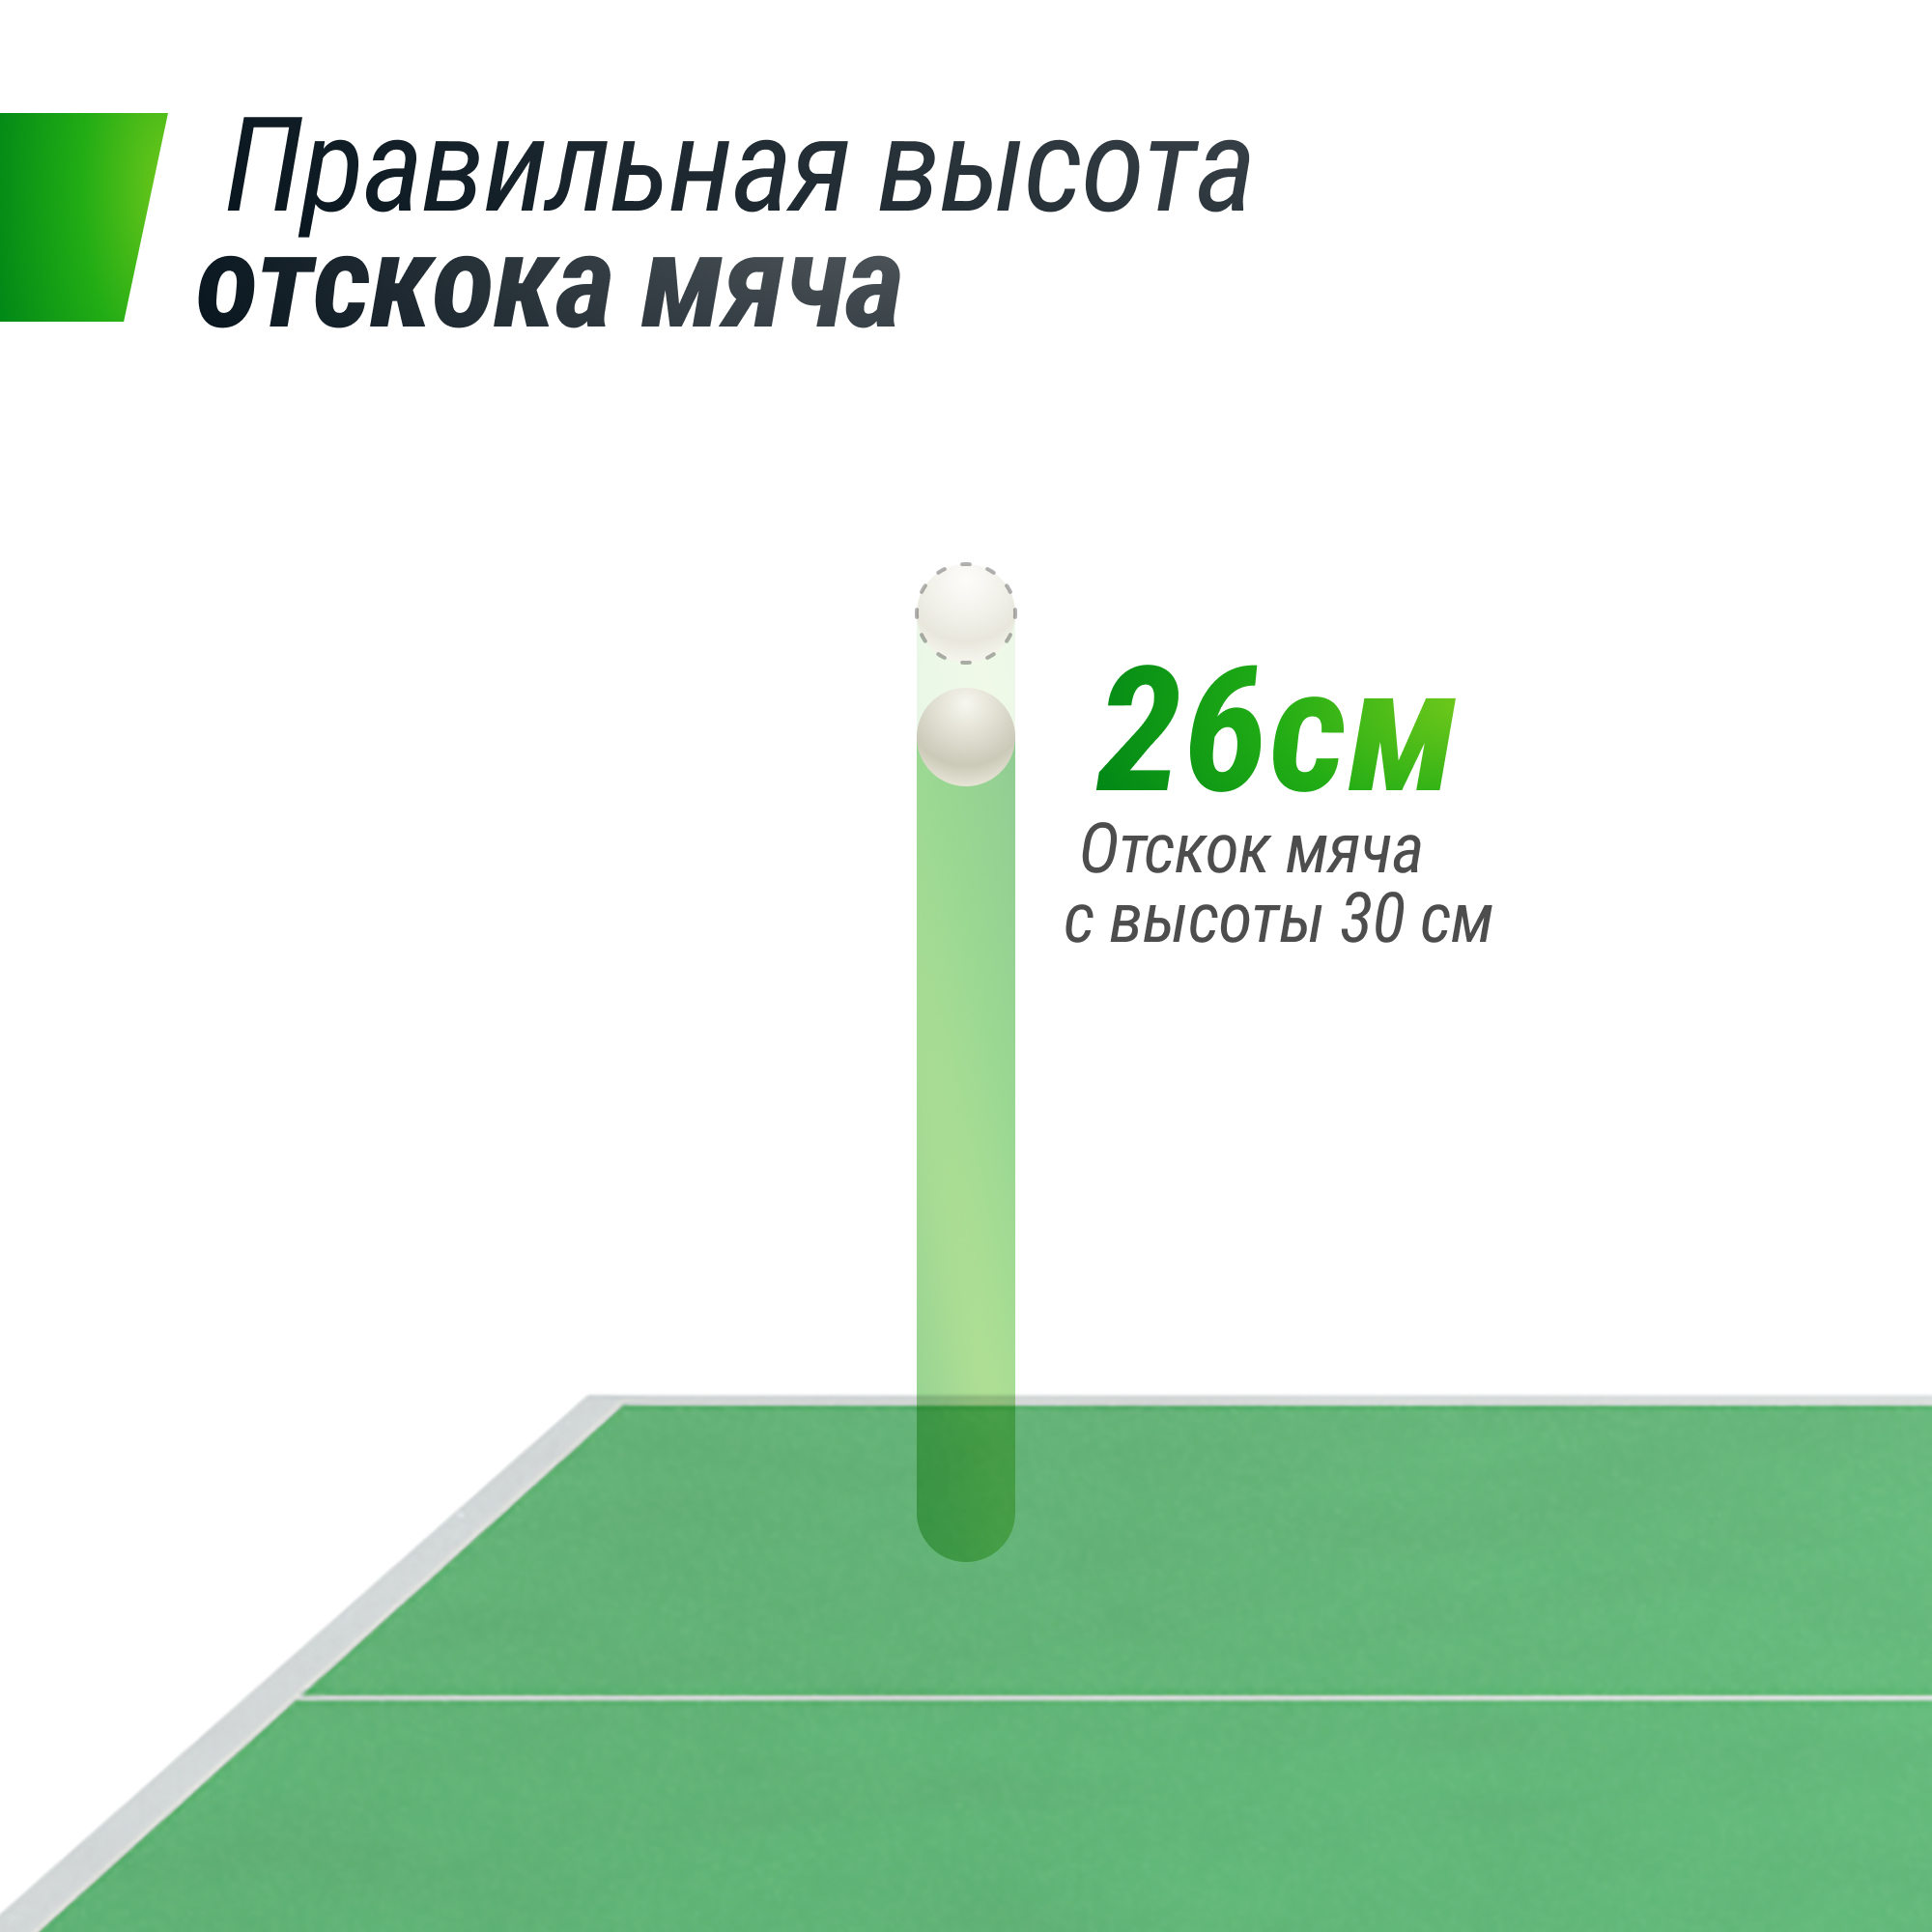 Профессиональный теннисный стол UNIX Line 25 mm MDF (Green) - 10 